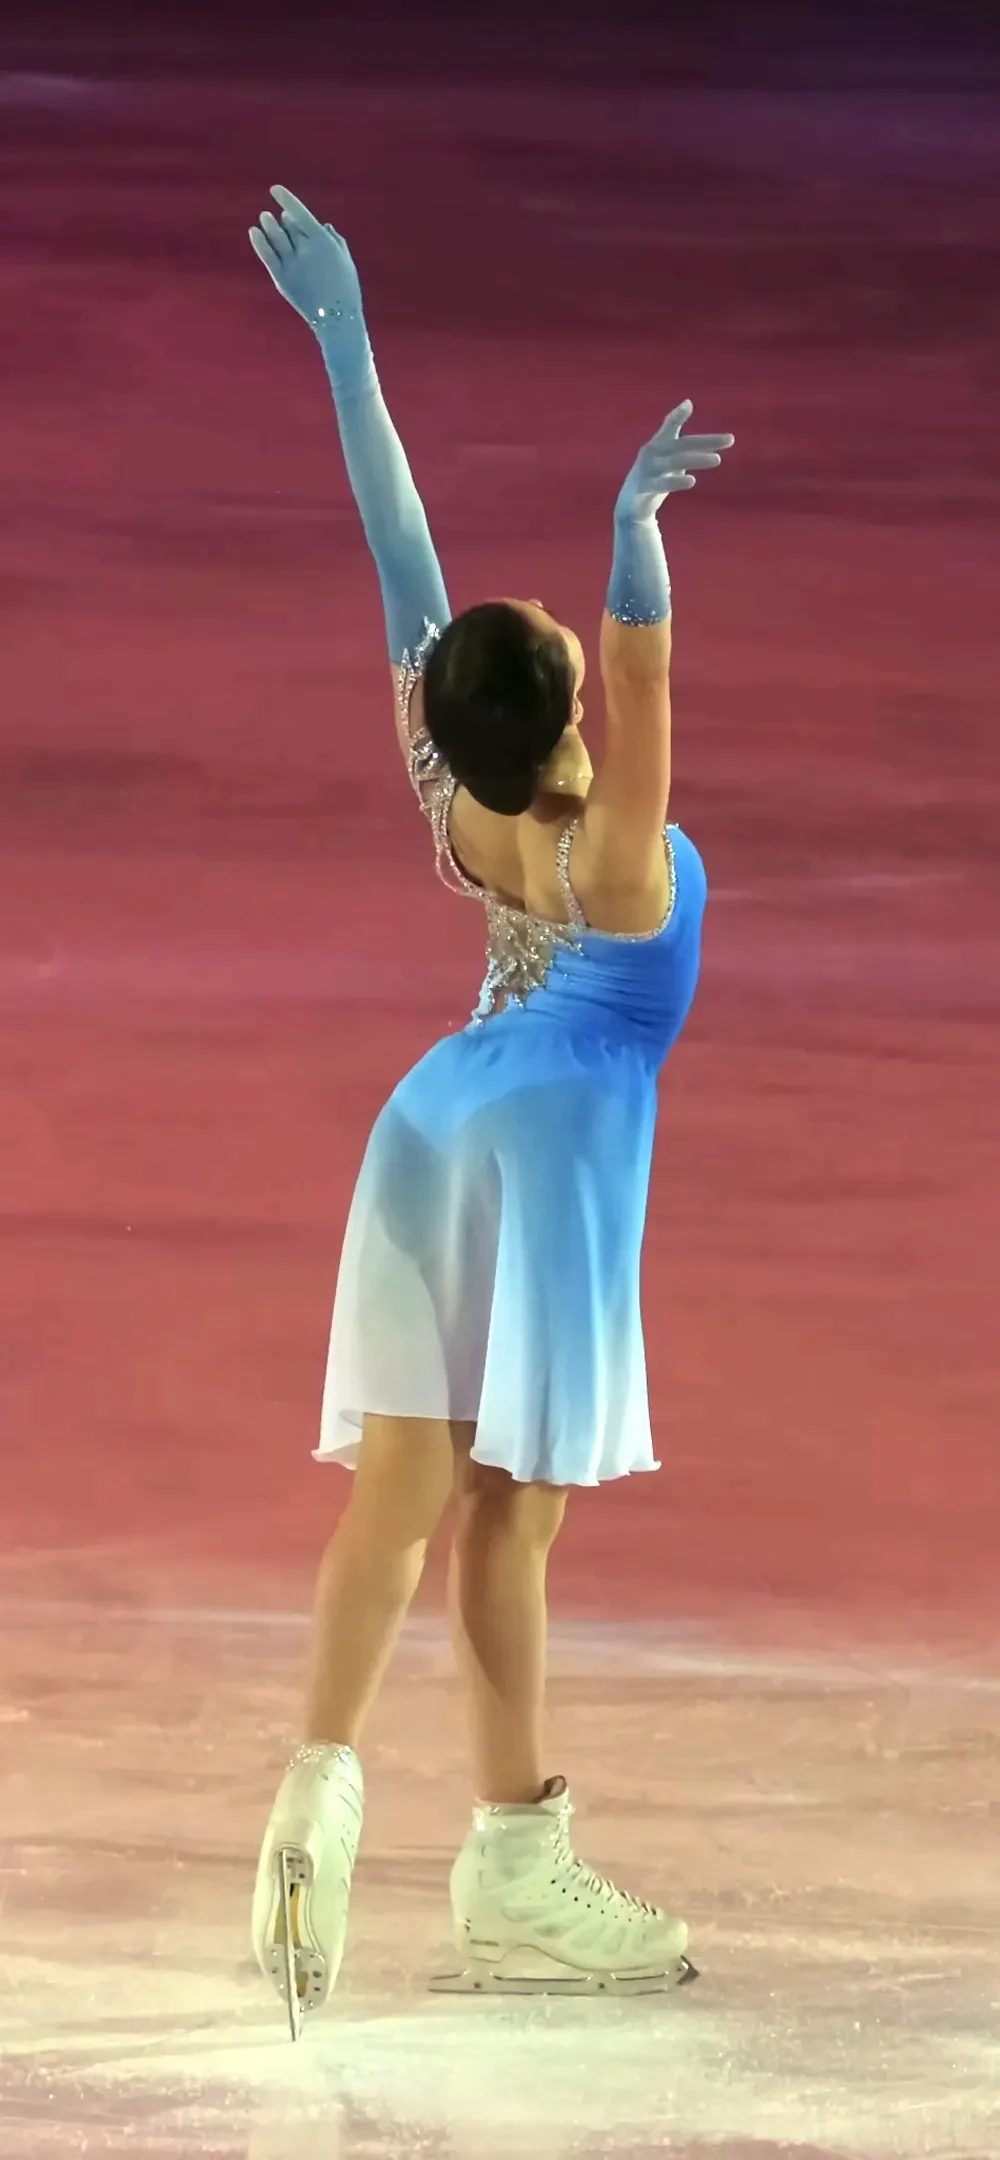 Female figure skater dress